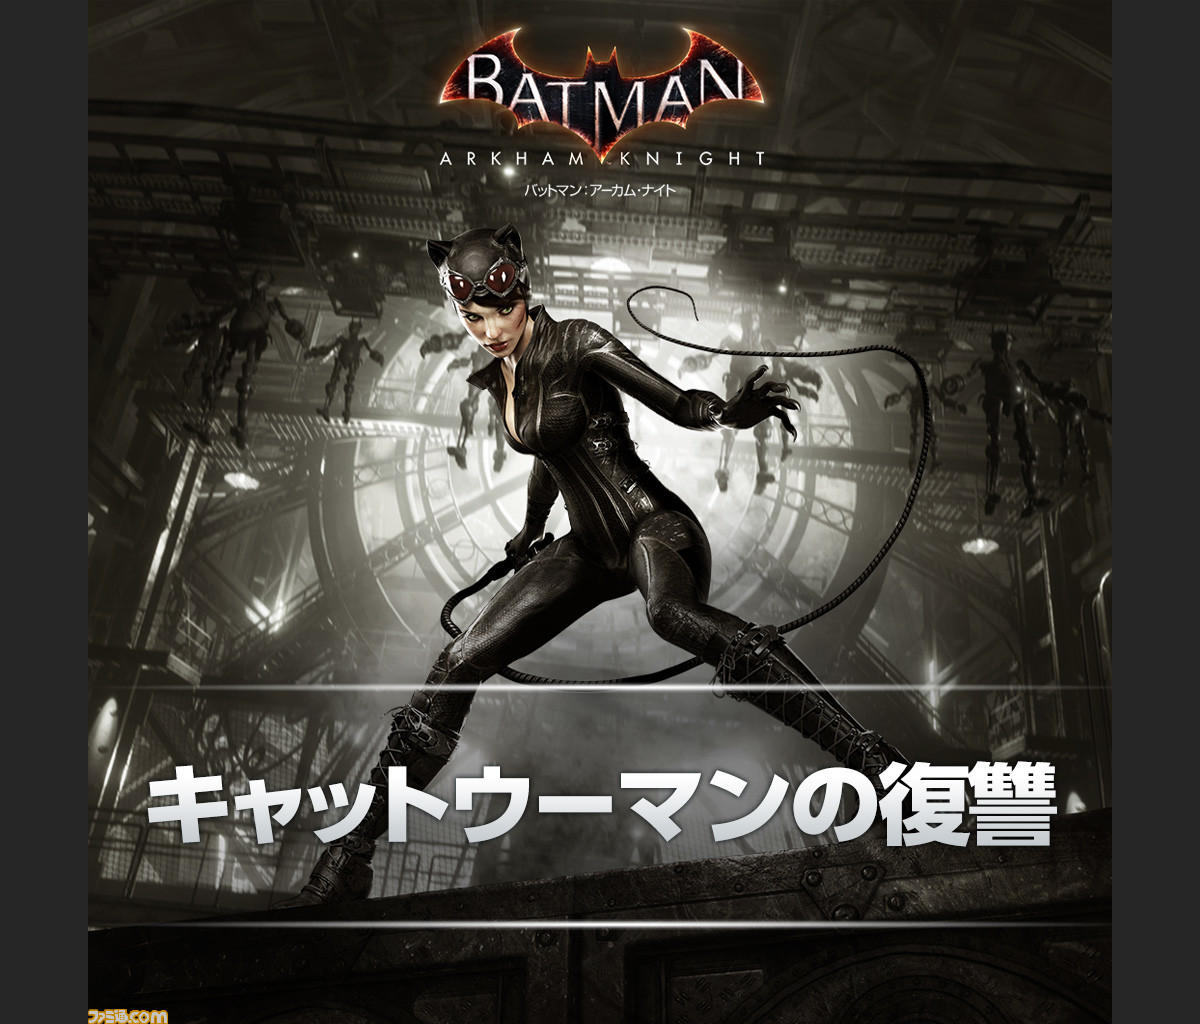 バットマン アーカム ナイト スペシャル エディション が3月10日に3980円 税抜 で発売決定 ストーリーに特化した3つのdlcコードも付属 ファミ通 Com